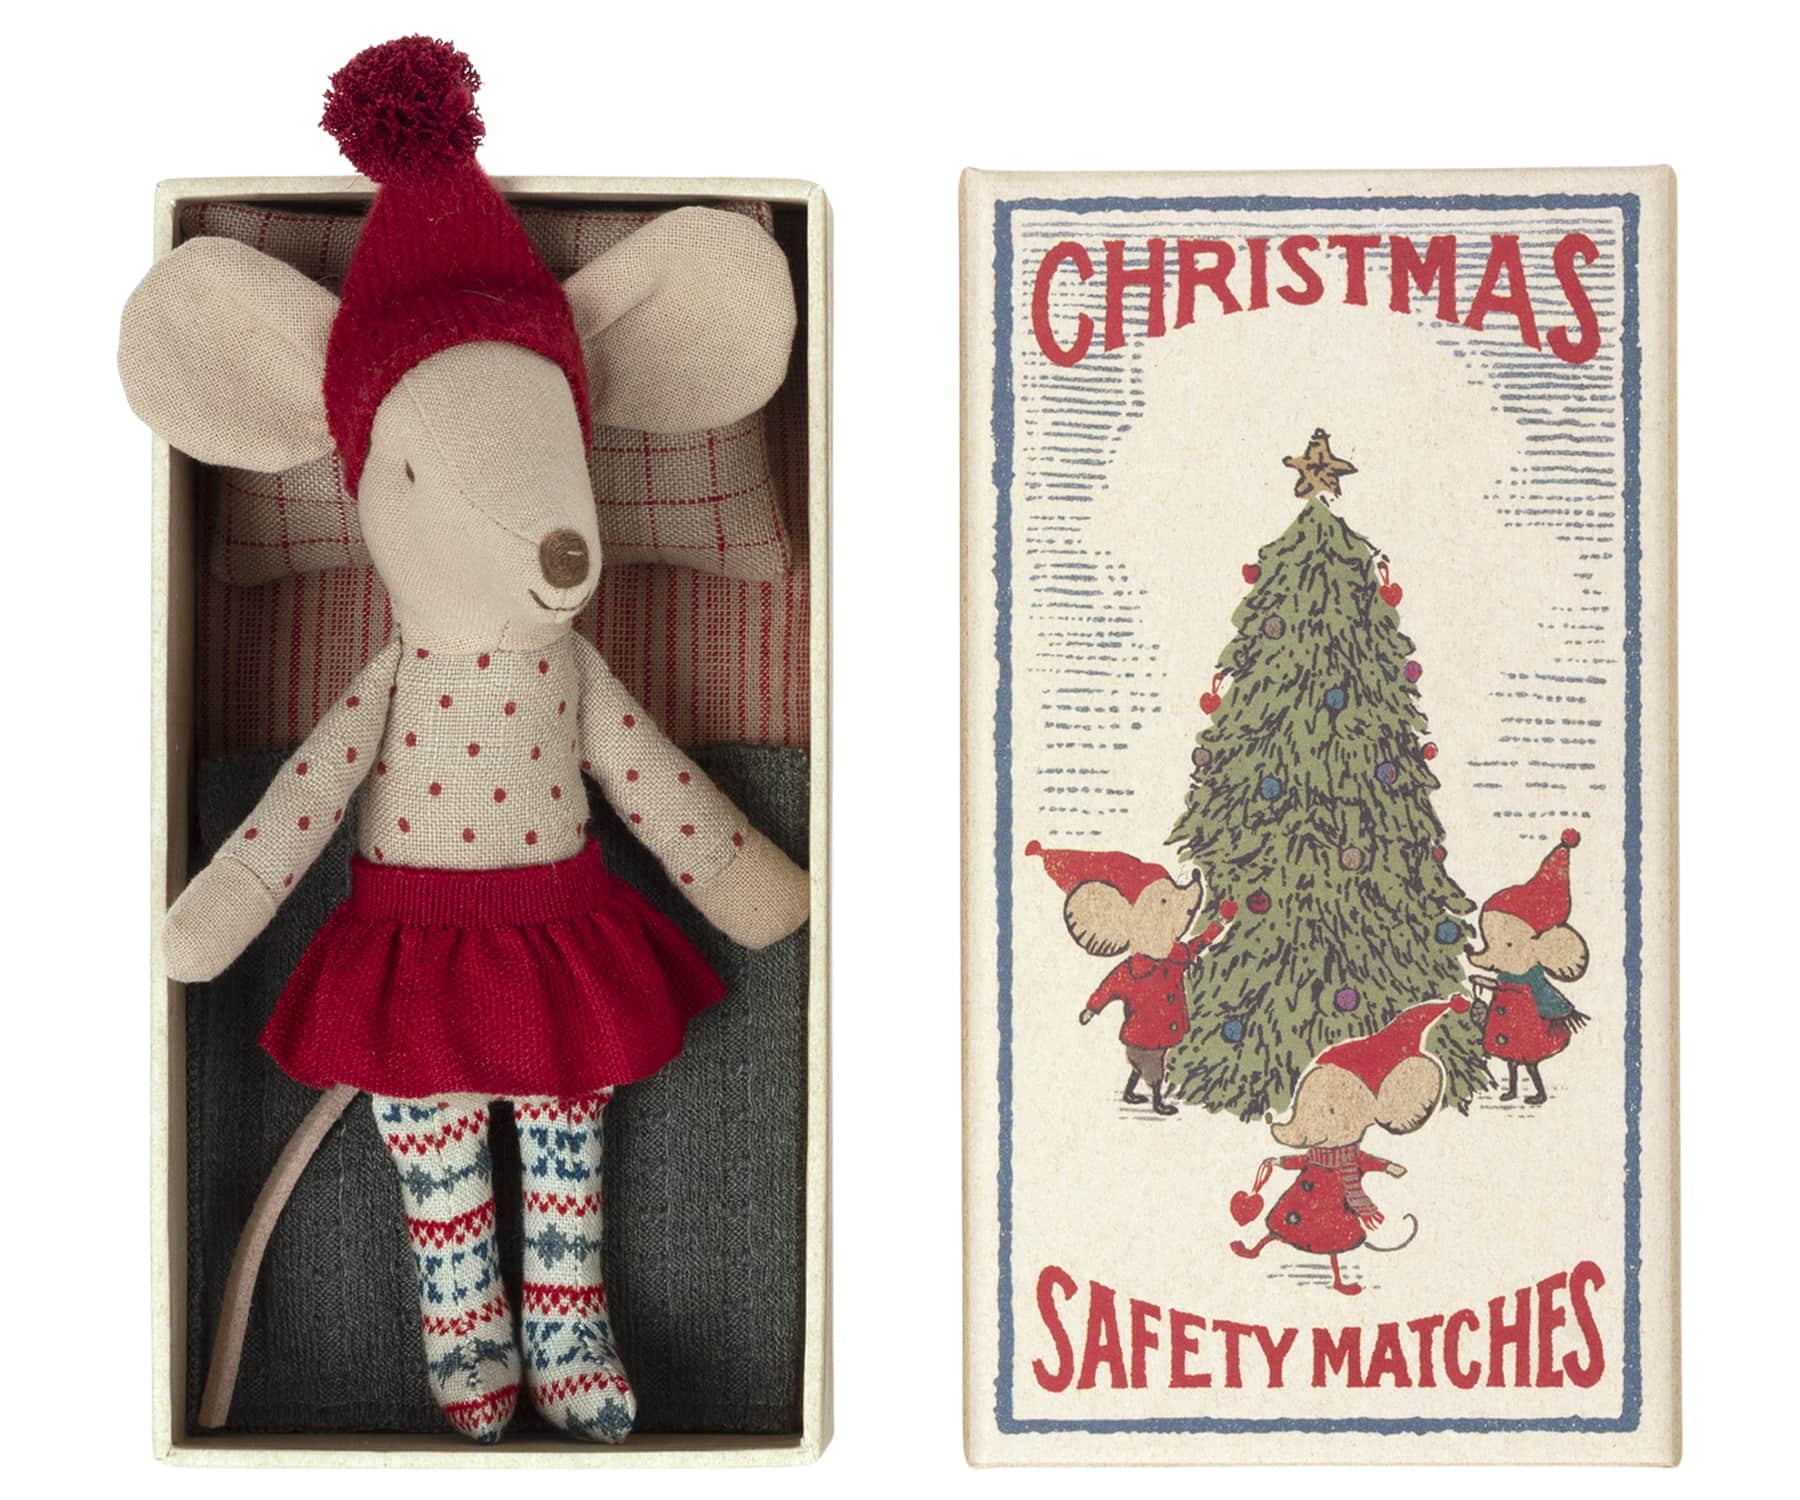 Maileg Vánoční myška Big Sister v krabičce, červená barva, papír, textil